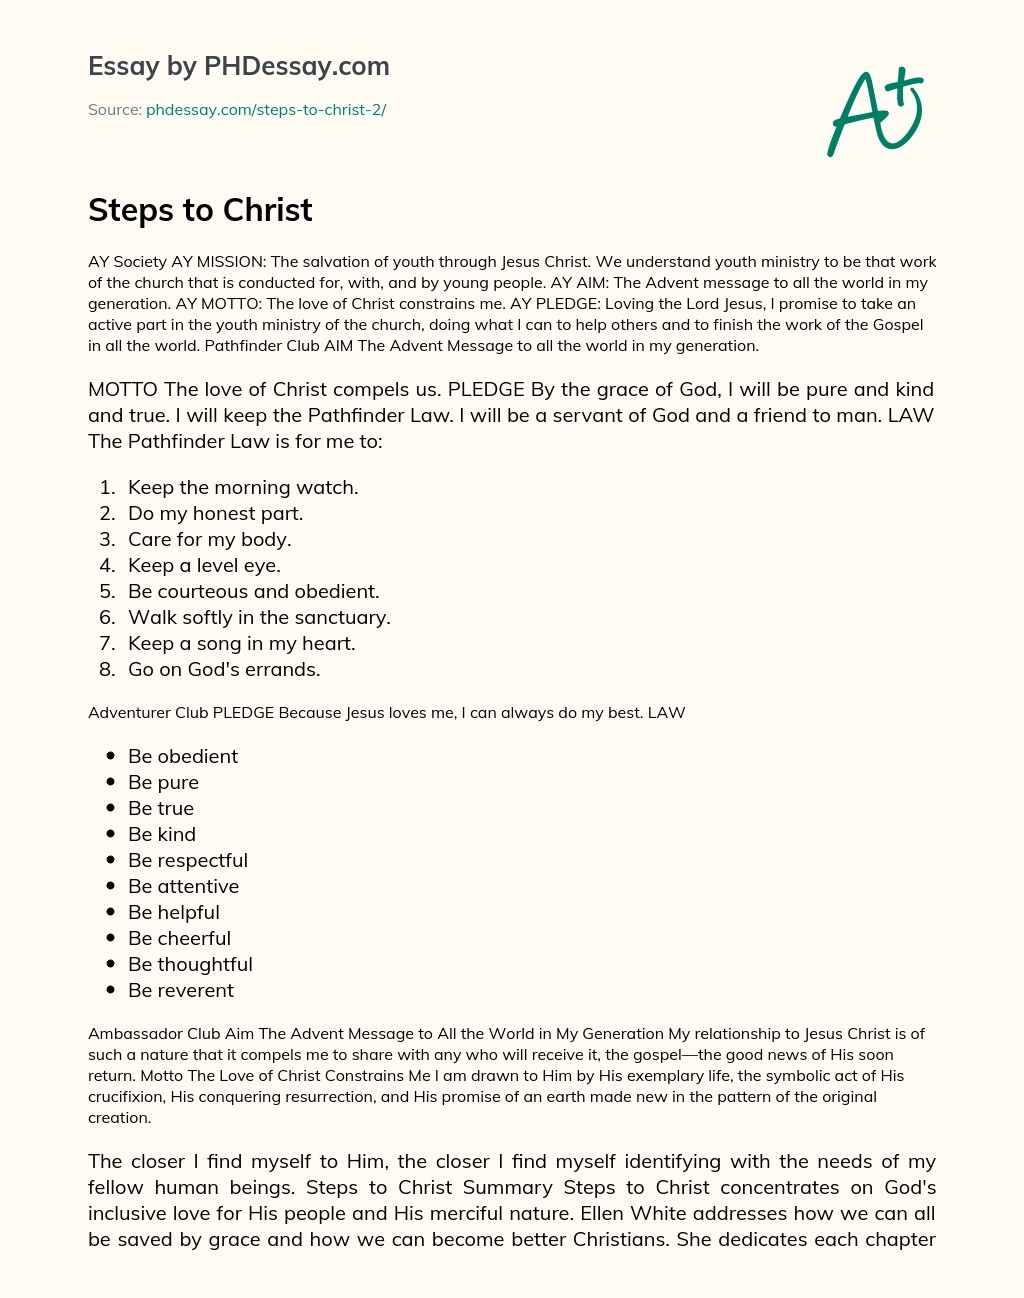 Steps to Christ essay